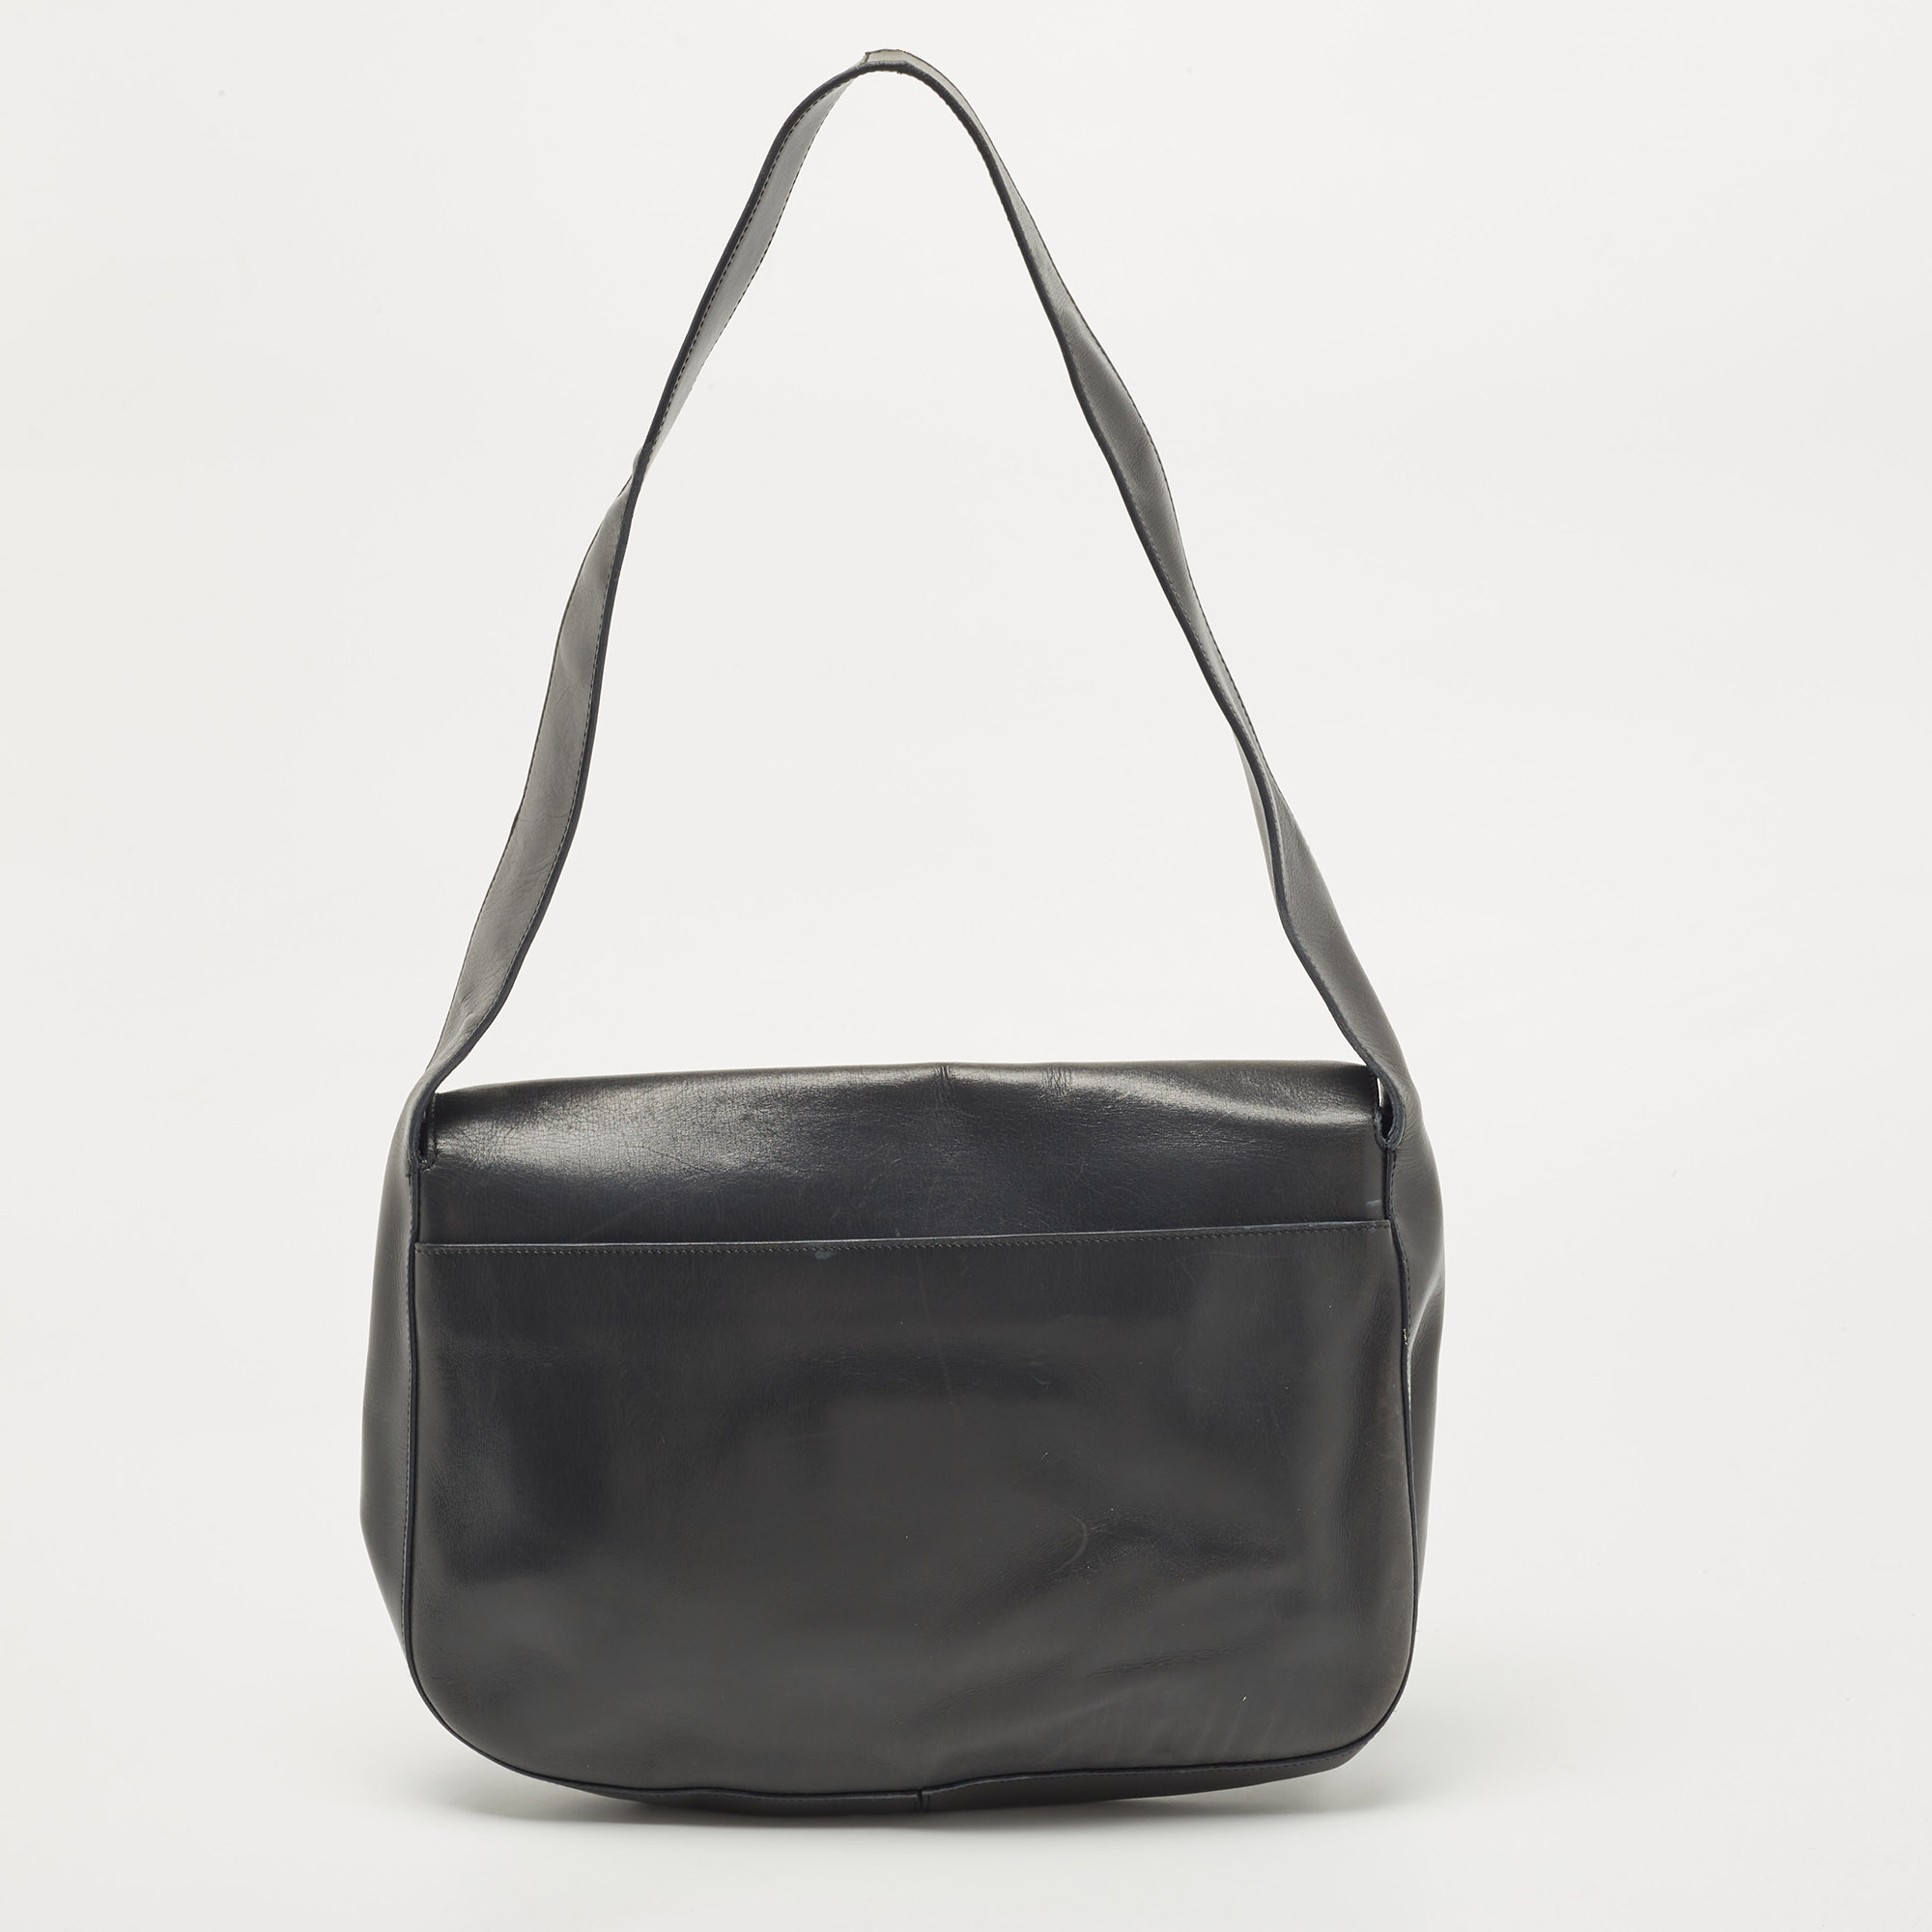 Prada Grey Leather Pushlock Flap Shoulder Bag